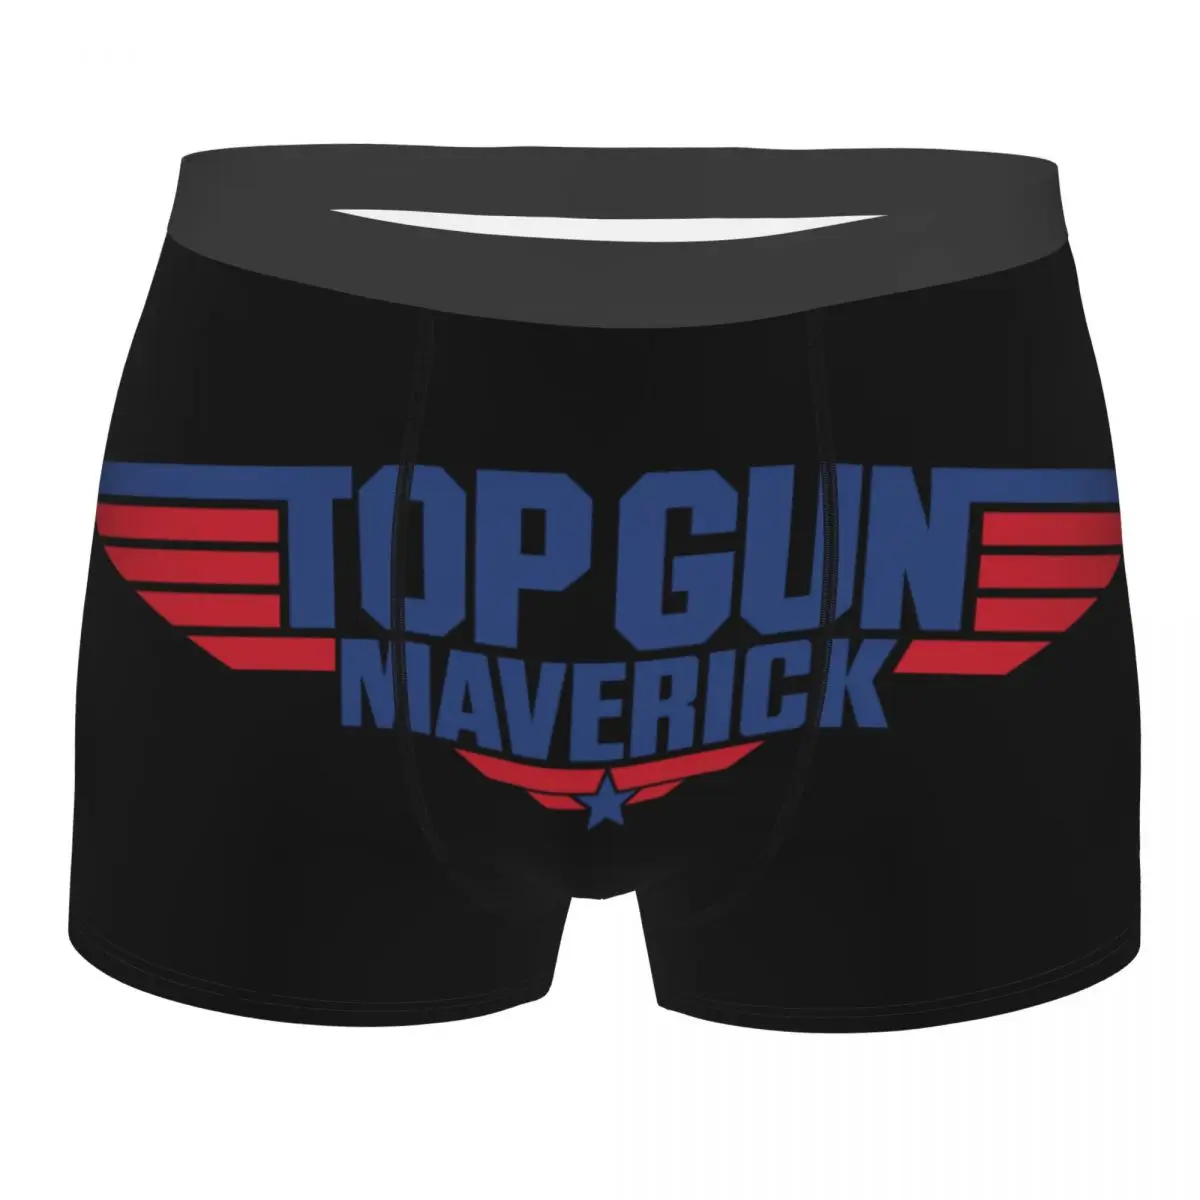 Крутые боксеры Top Gun Maverick Шорты Трусы мужские дышащие трусы из американского боевика с Томом Крузом Нижнее белье . ' - ' . 0